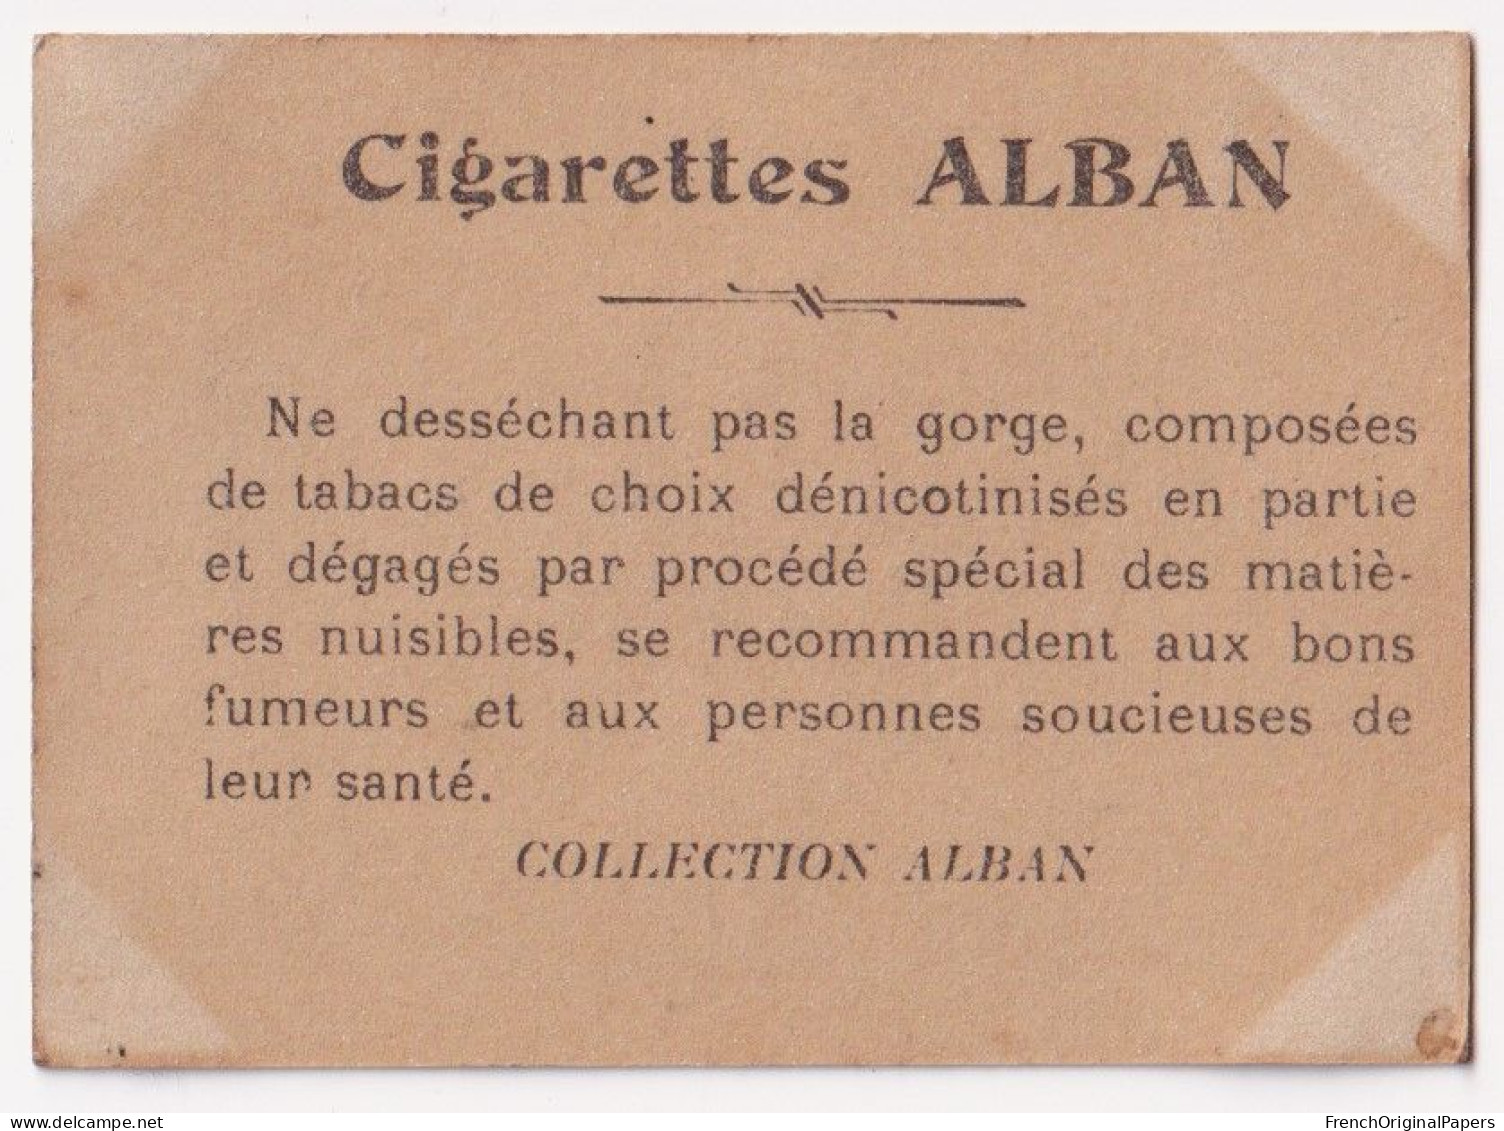 Otéro - Cigarettes L. Alban 1910 Photo Femme Sexy Pin-up Vintage Artiste Cabaret Paris Bône Danse Danseuse A62-19 - Autres Marques